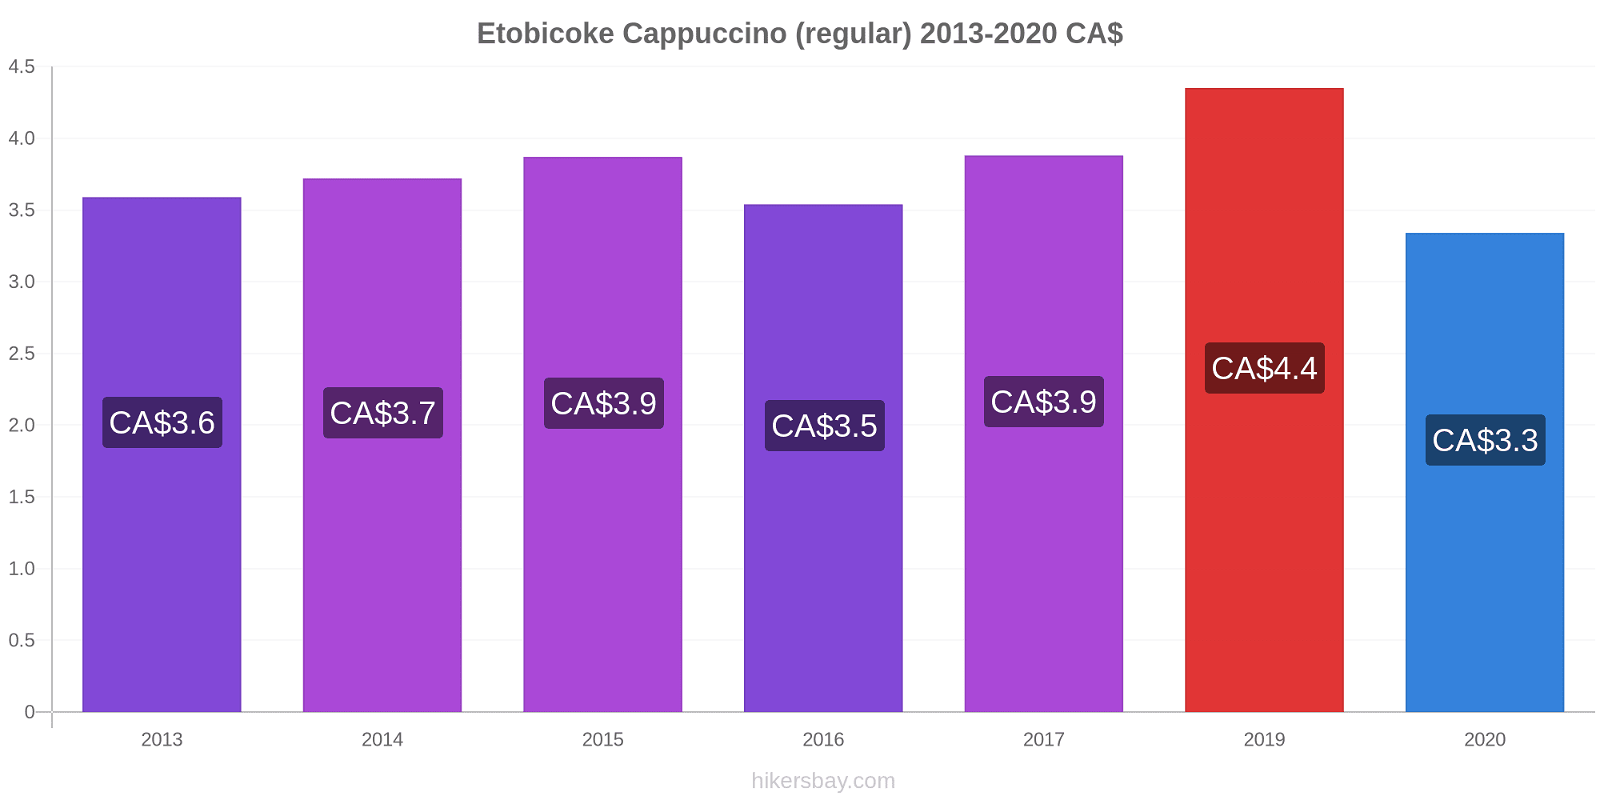 Etobicoke price changes Cappuccino (regular) hikersbay.com